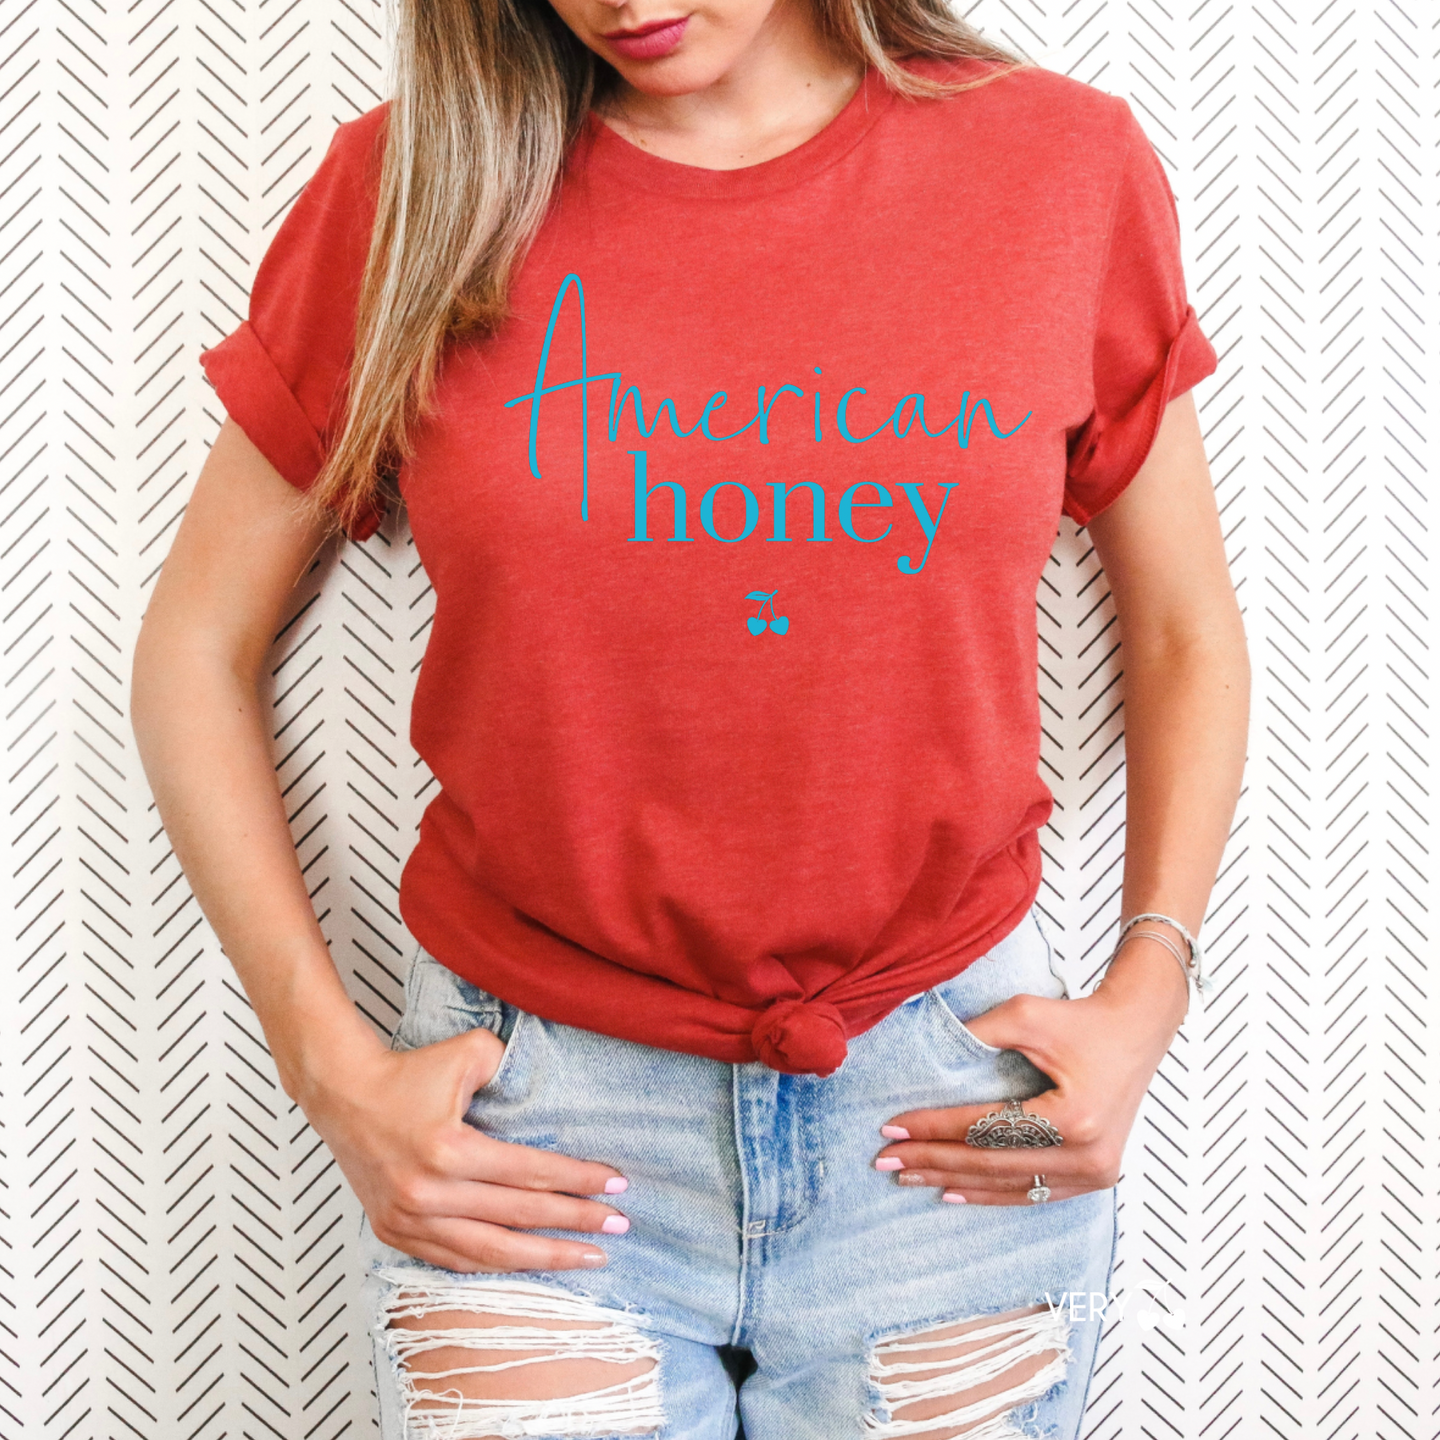 American Honey Graphic Shirt